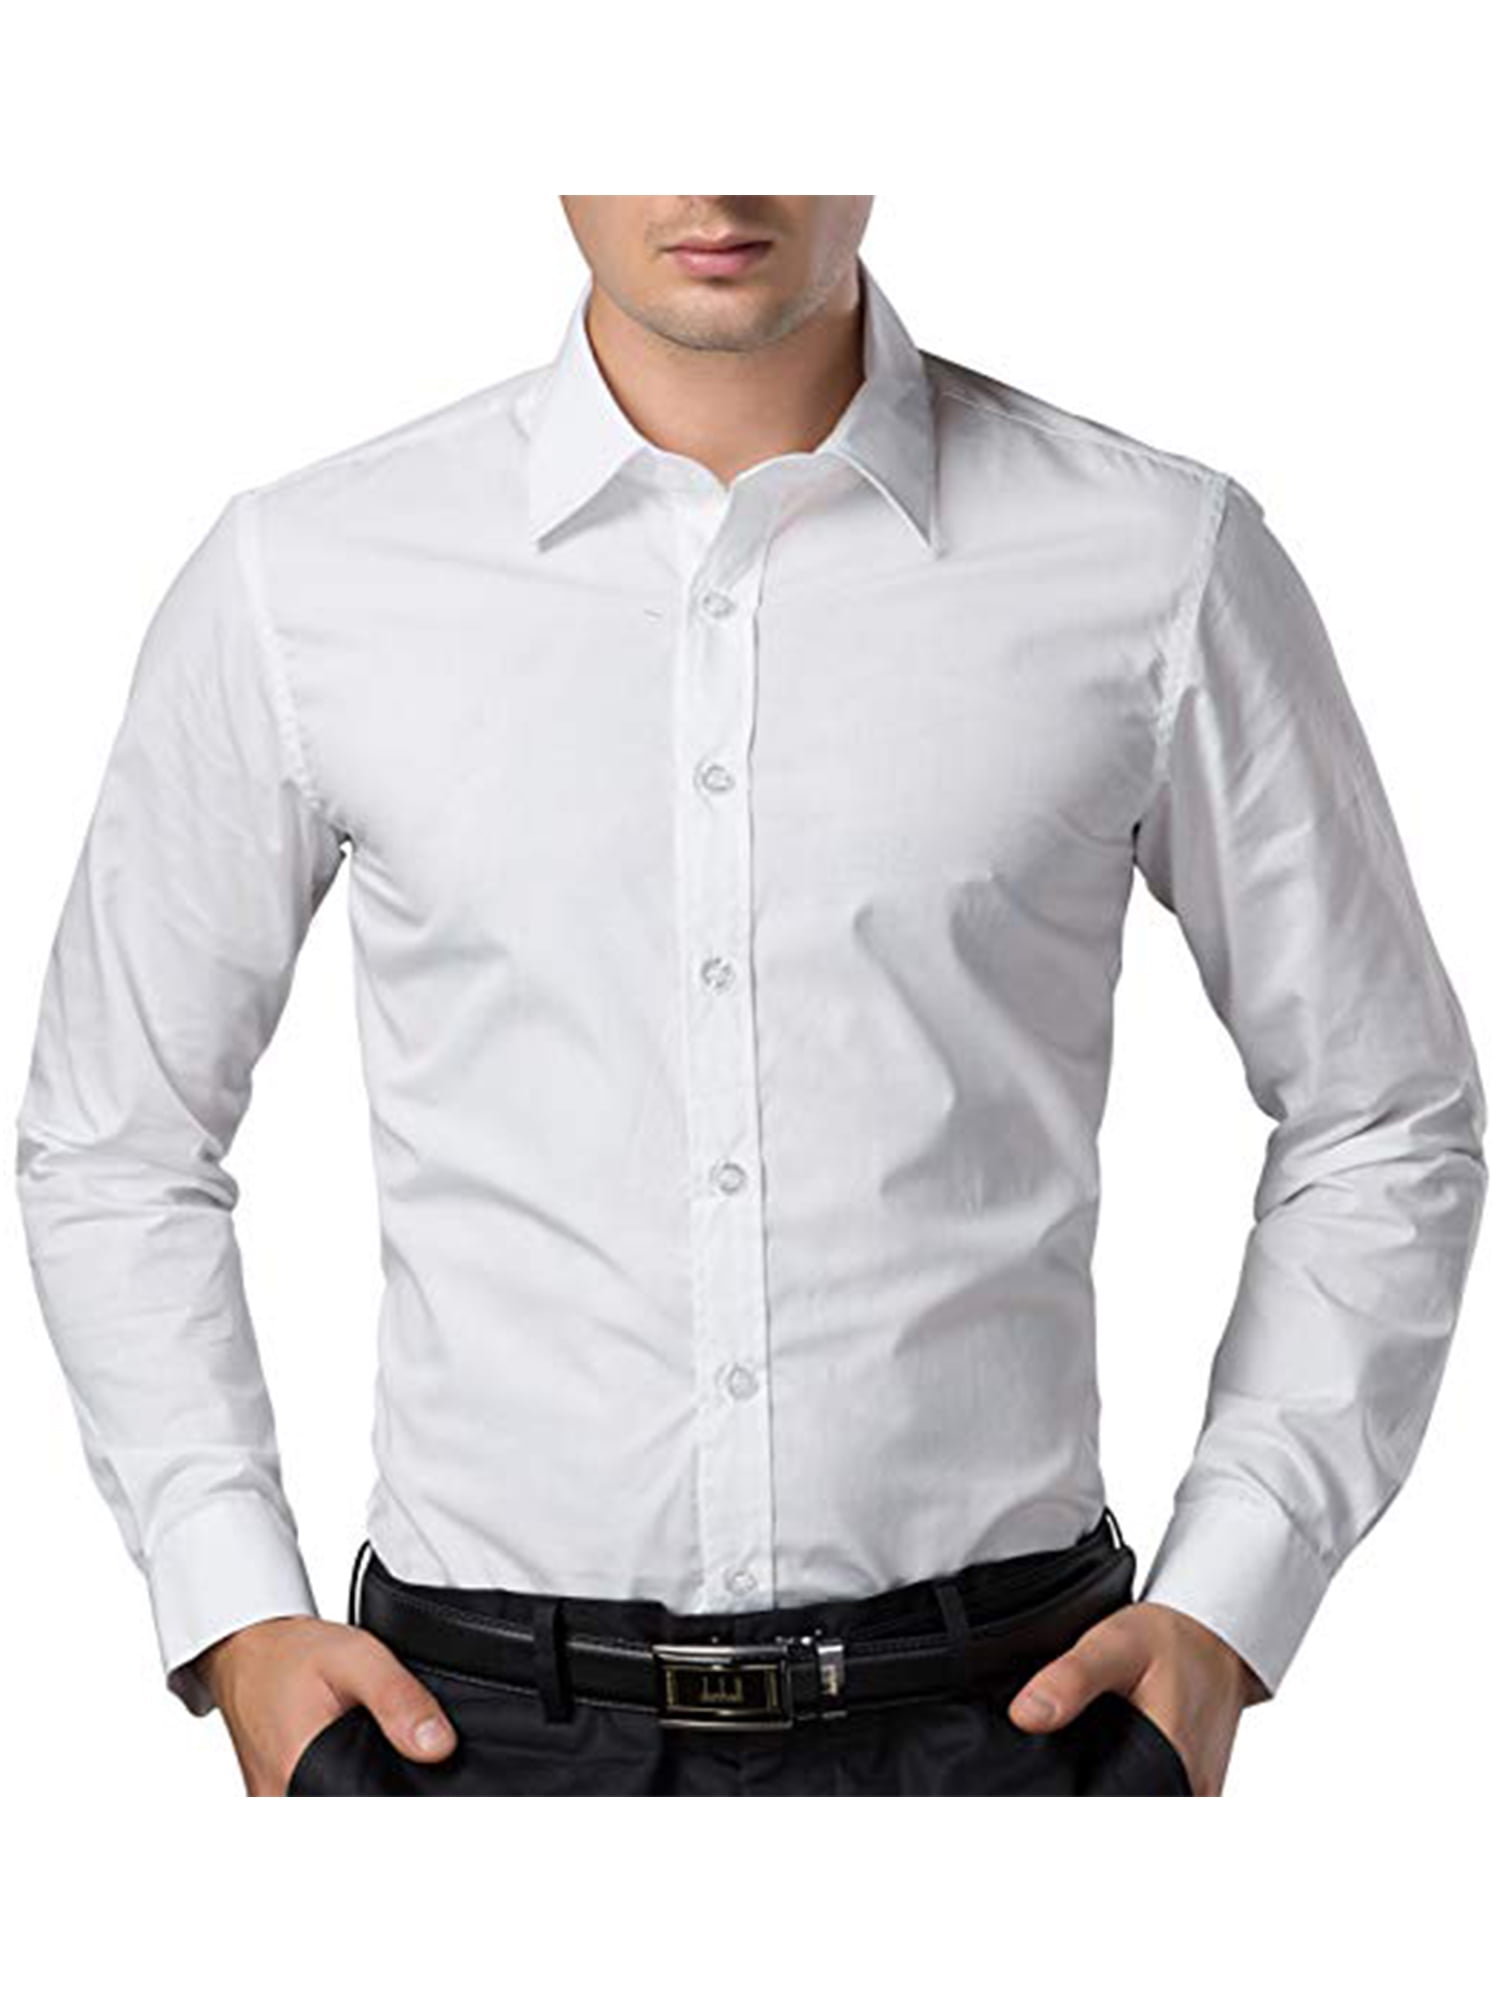 Mens White Cotton T Shirts White T-shirt | Venzero